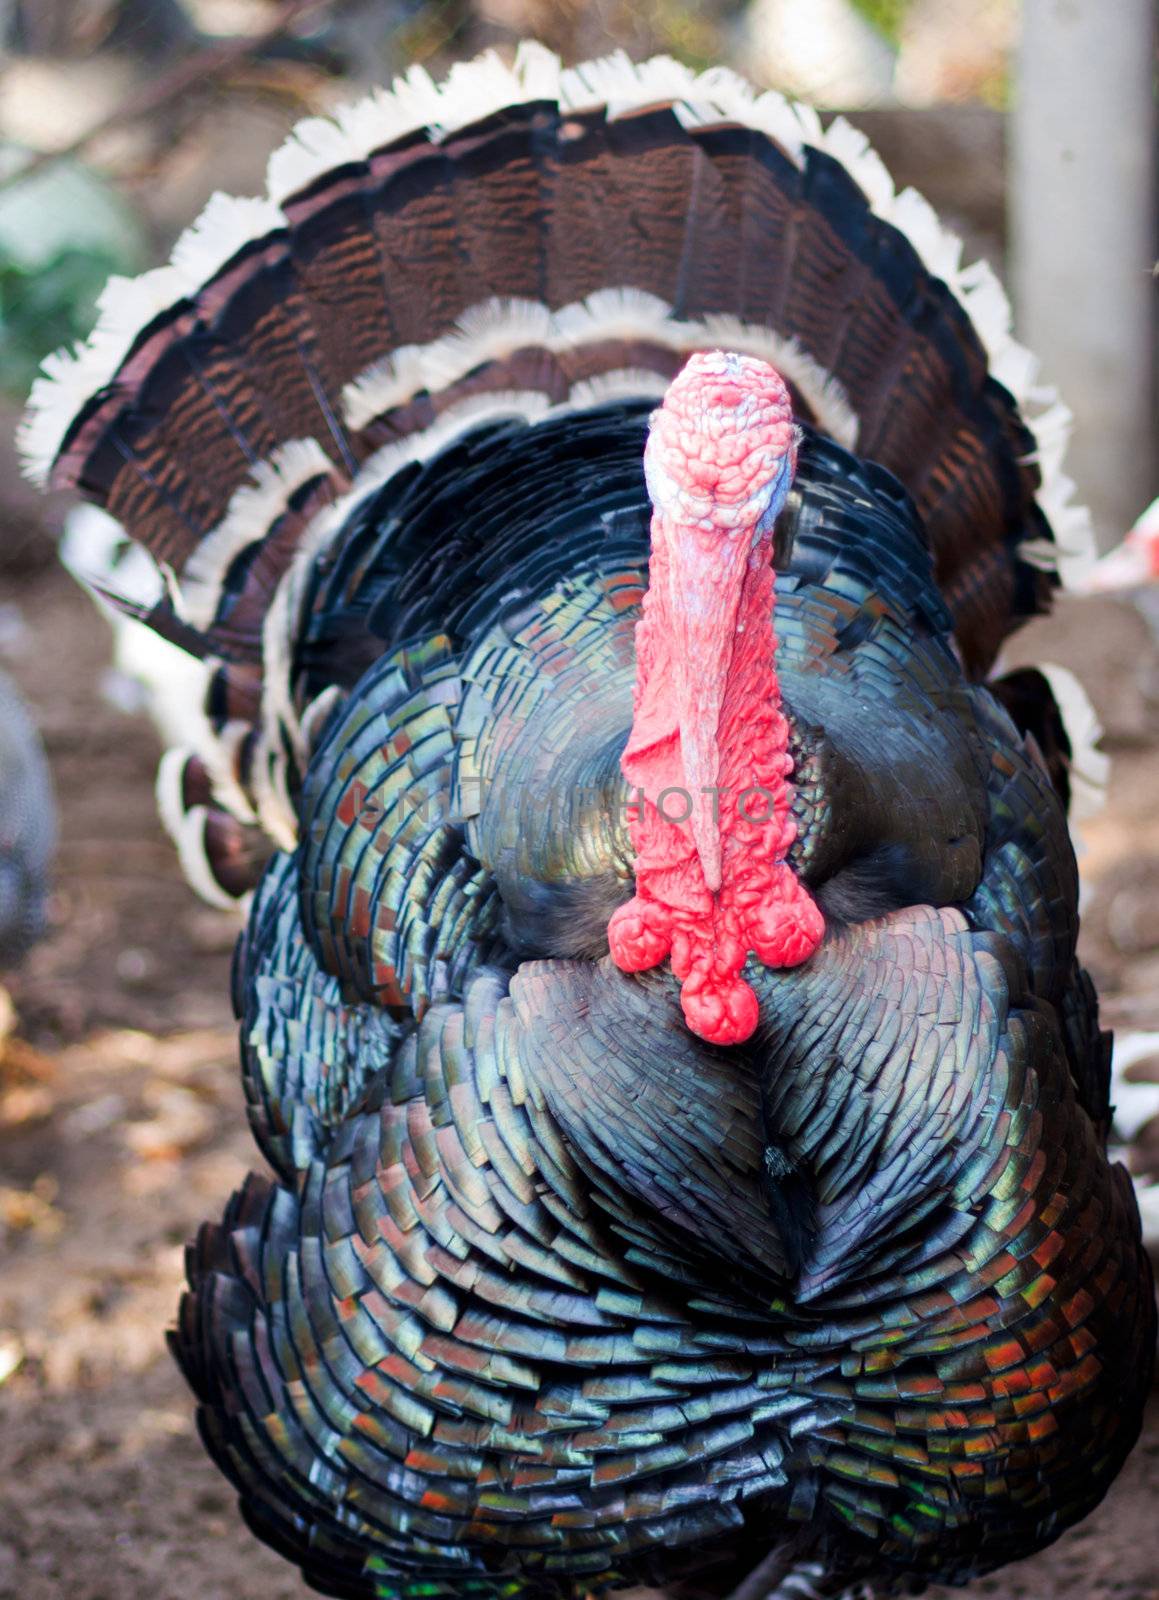 Large male turkey in nature  by schankz